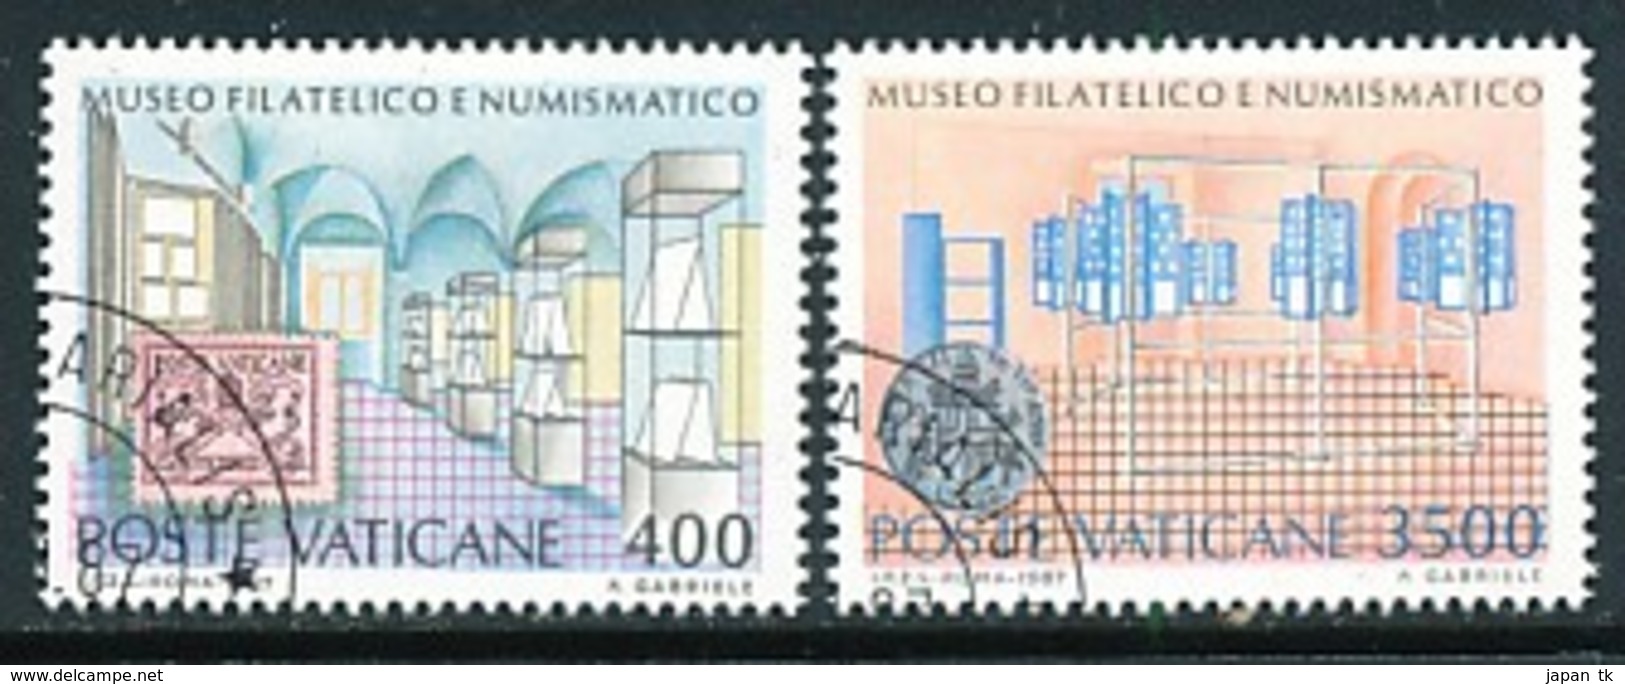 VATIKAN Mi.Nr. 924-925 Einweihung Des Philatelistischen Und Numismatischen Museums Des Vatikan - Siehe Scan - Used - Used Stamps